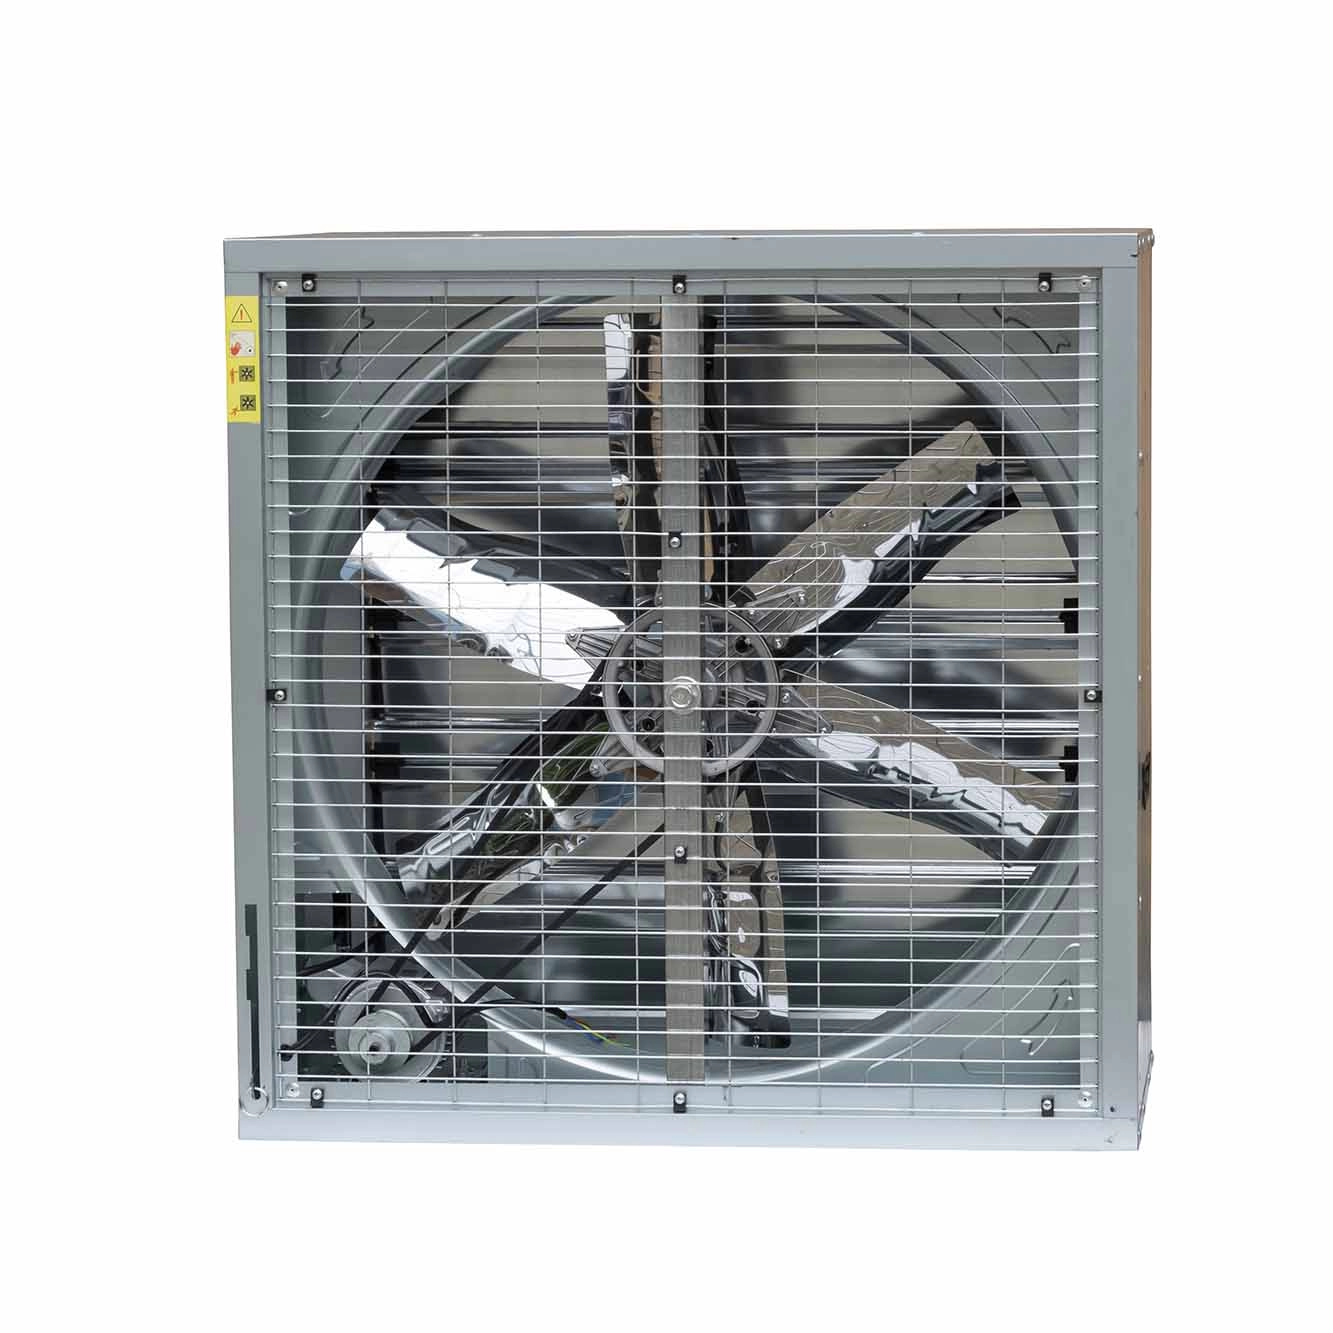 Endüstriyel Egzoz Evaporatif Hava Soğutucu Fanları Çin Garaj Egzoz Fanı Tarımsal Egzoz Fanları Üreticileri